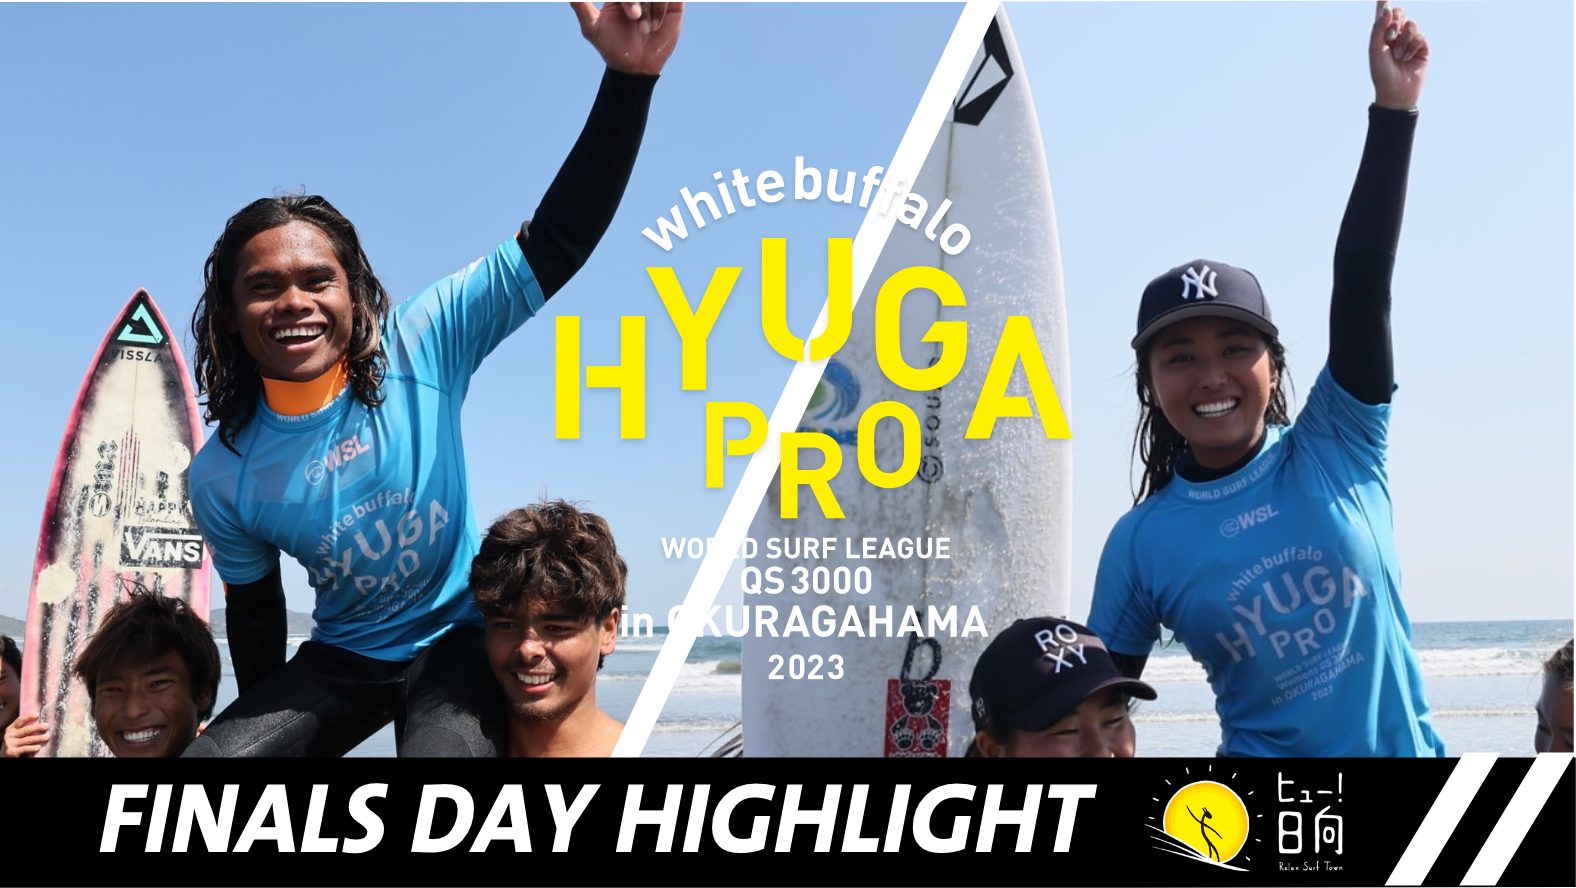 whitebuffalo HYUGA PRO 2023 Finals Day Highlight